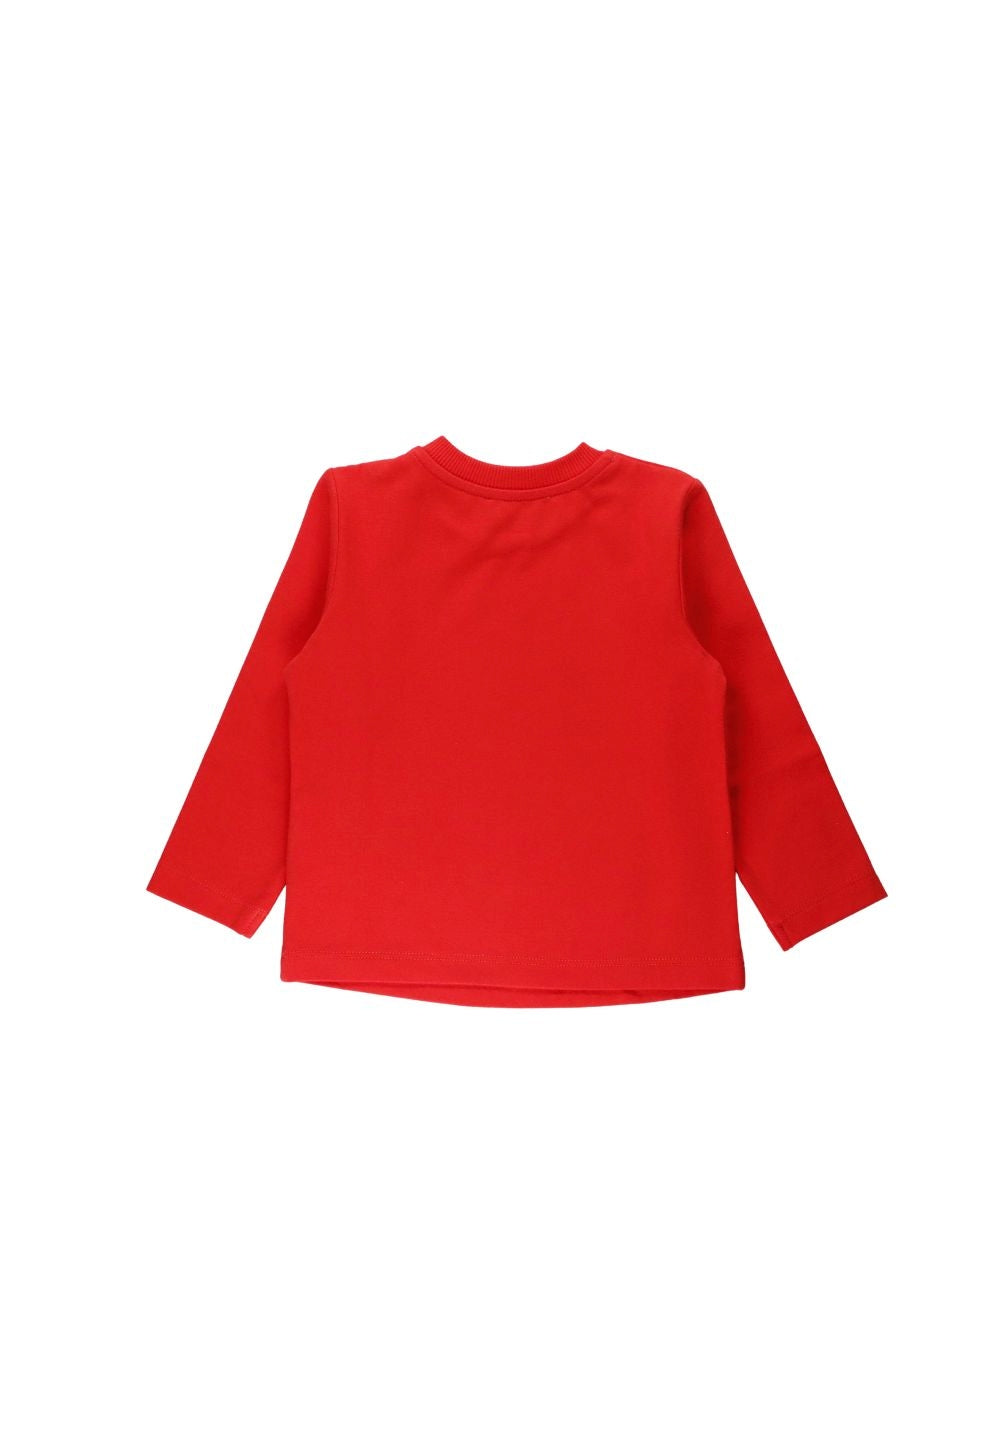 T-shirt rossa per bambino - Primamoda kids